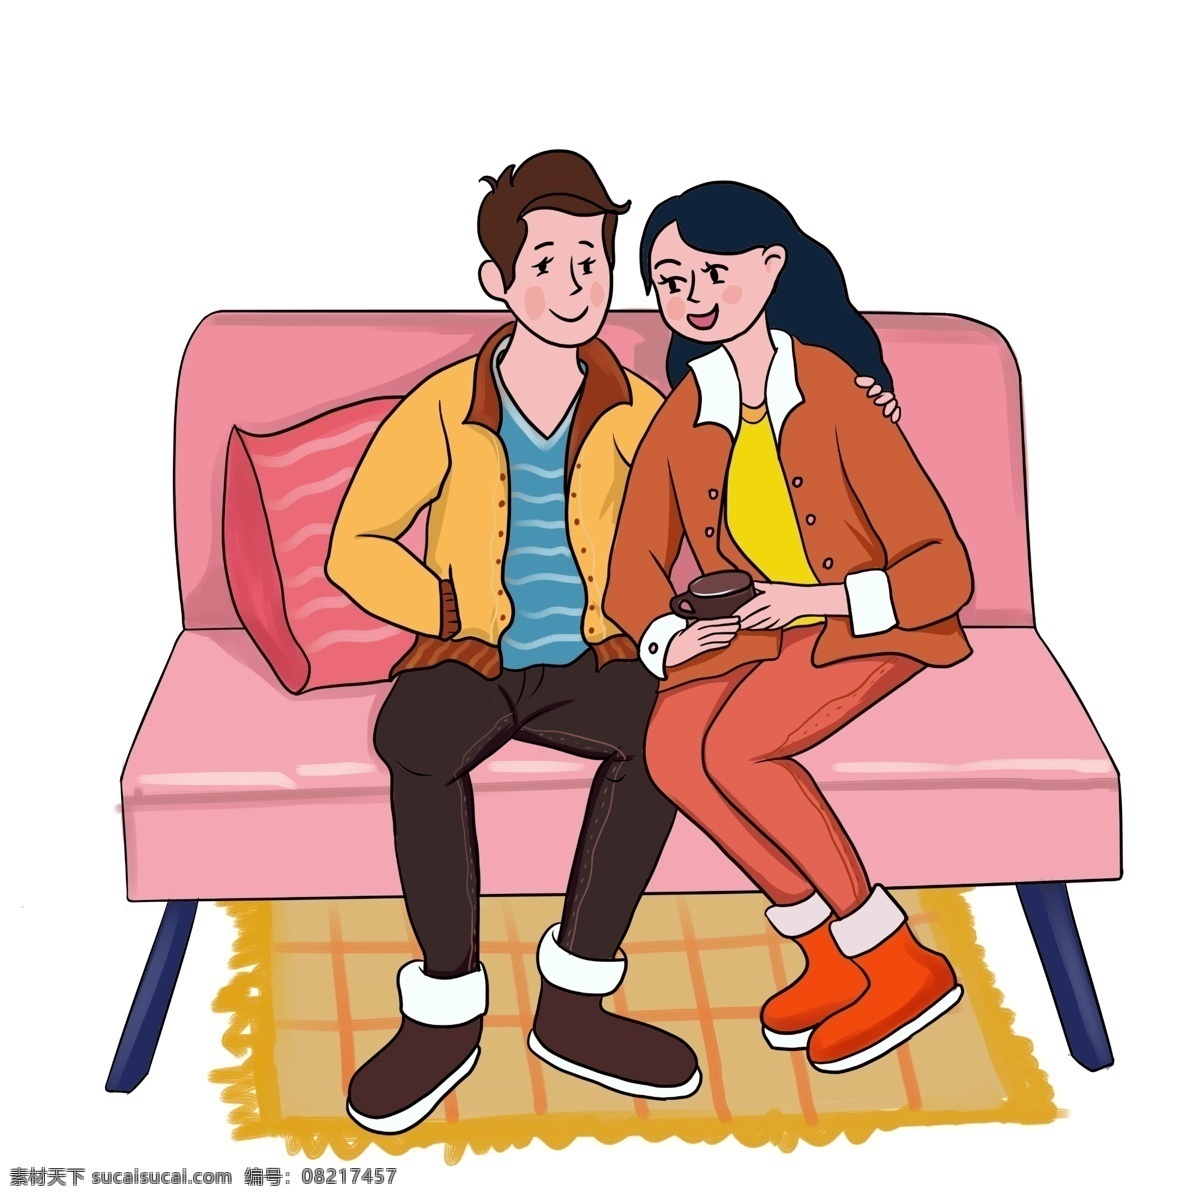 时尚 手绘 插画 情侣 2019年 家 约会 一对情侣 男孩 女孩 沙发 聊天 幸福 微笑 快乐 幸福爱人 卡通 人物